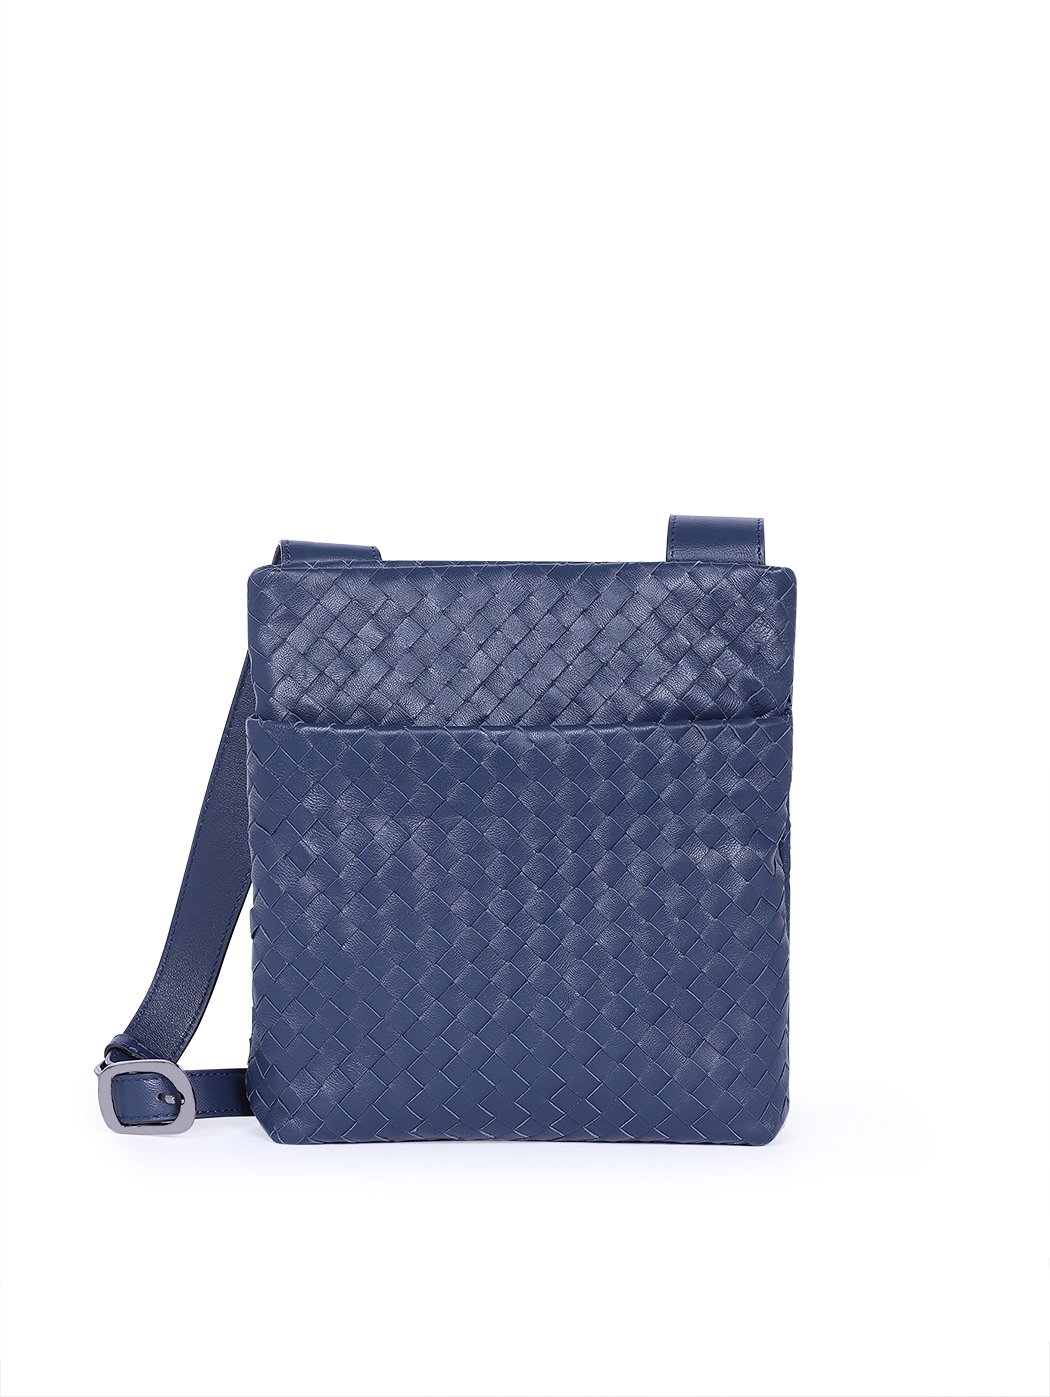 Плетеная мужская сумка кросс – боди коллекции  Intrecci синего цвета